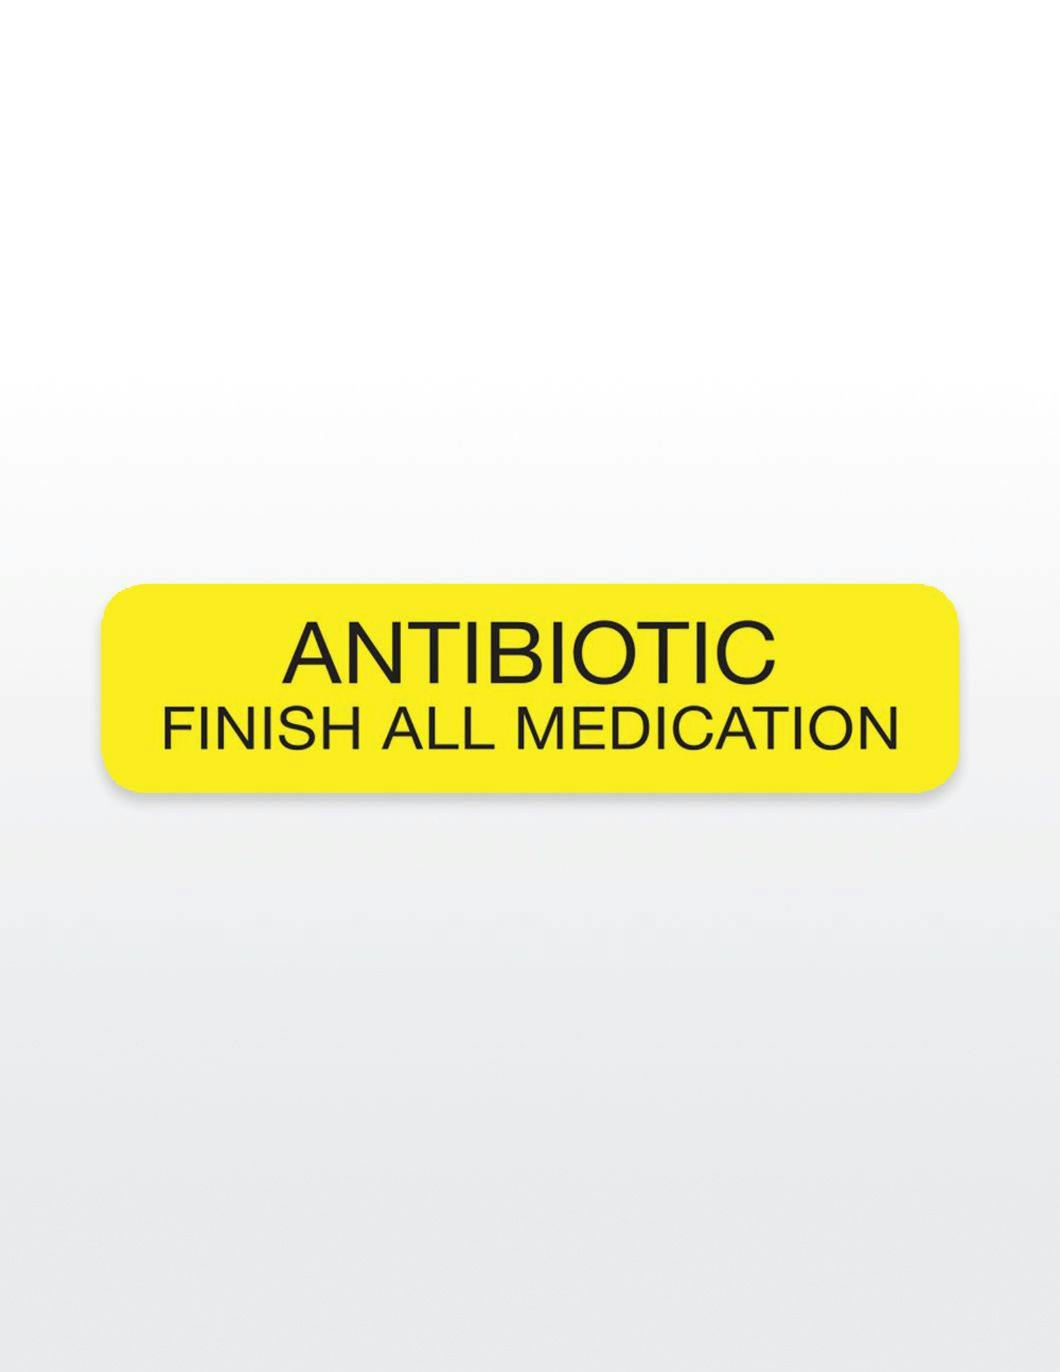 antibiotic-finish-all-medication-medication-stickers